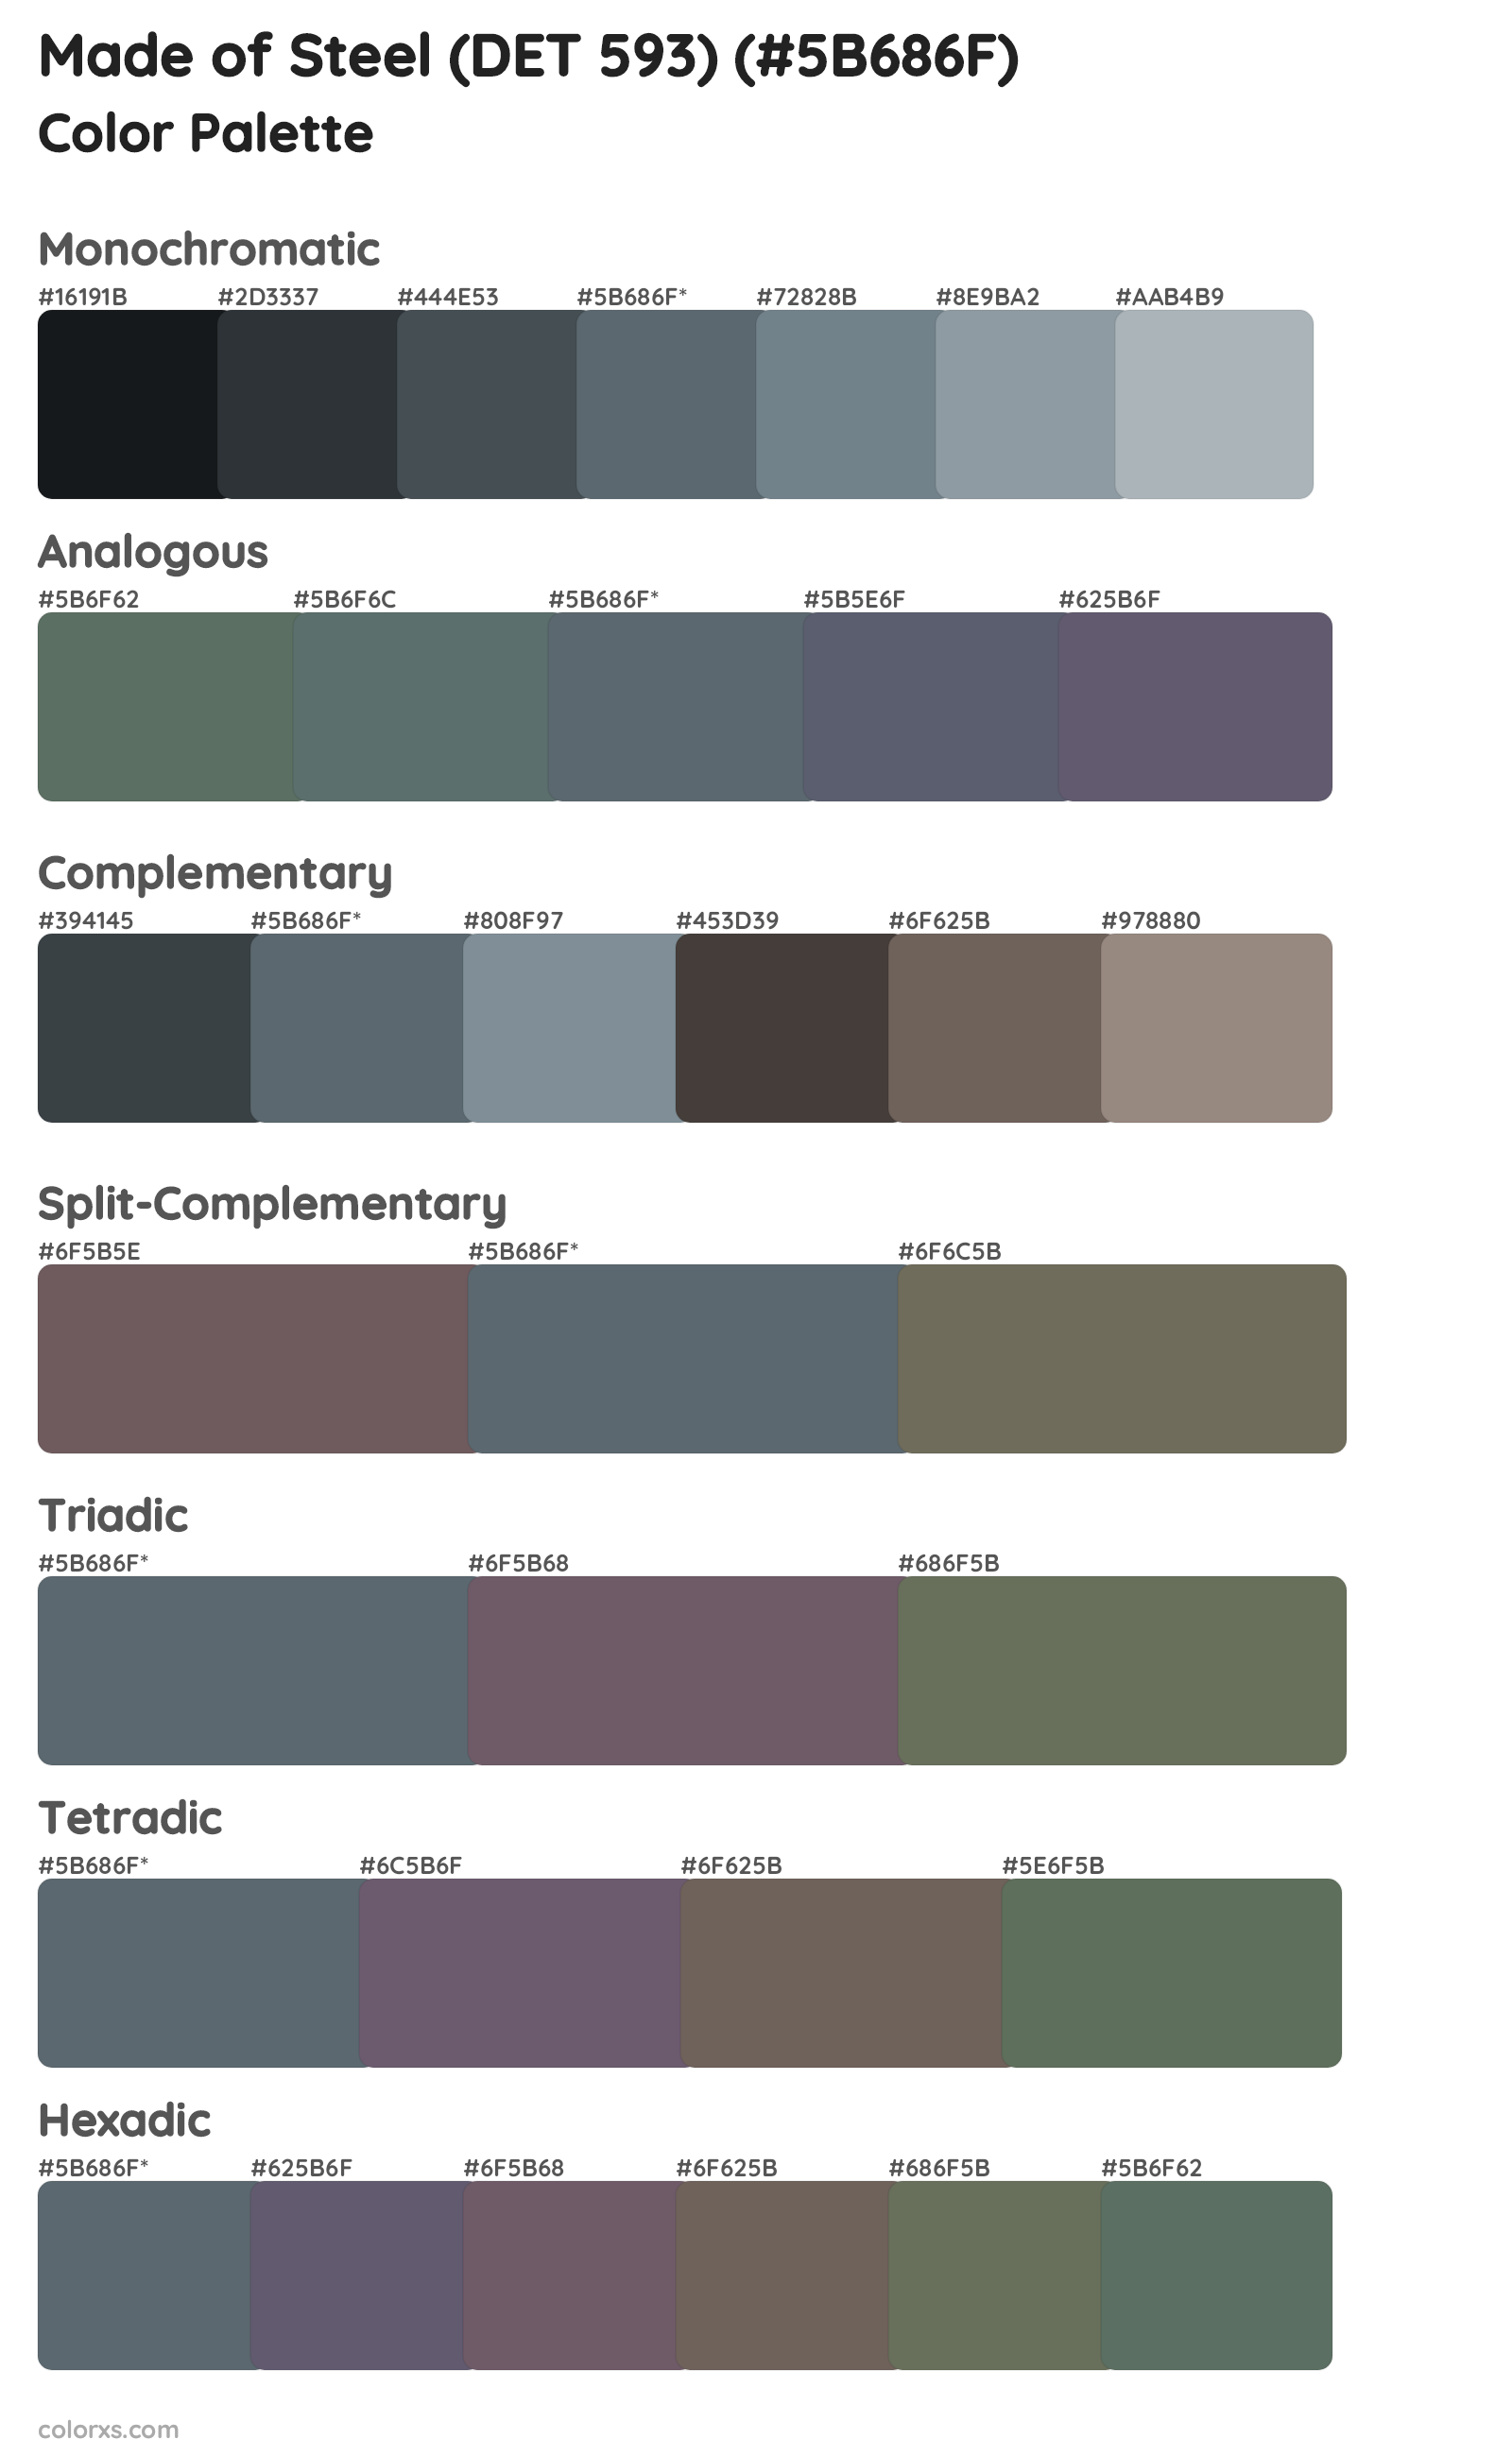 Made of Steel (DET 593) Color Scheme Palettes